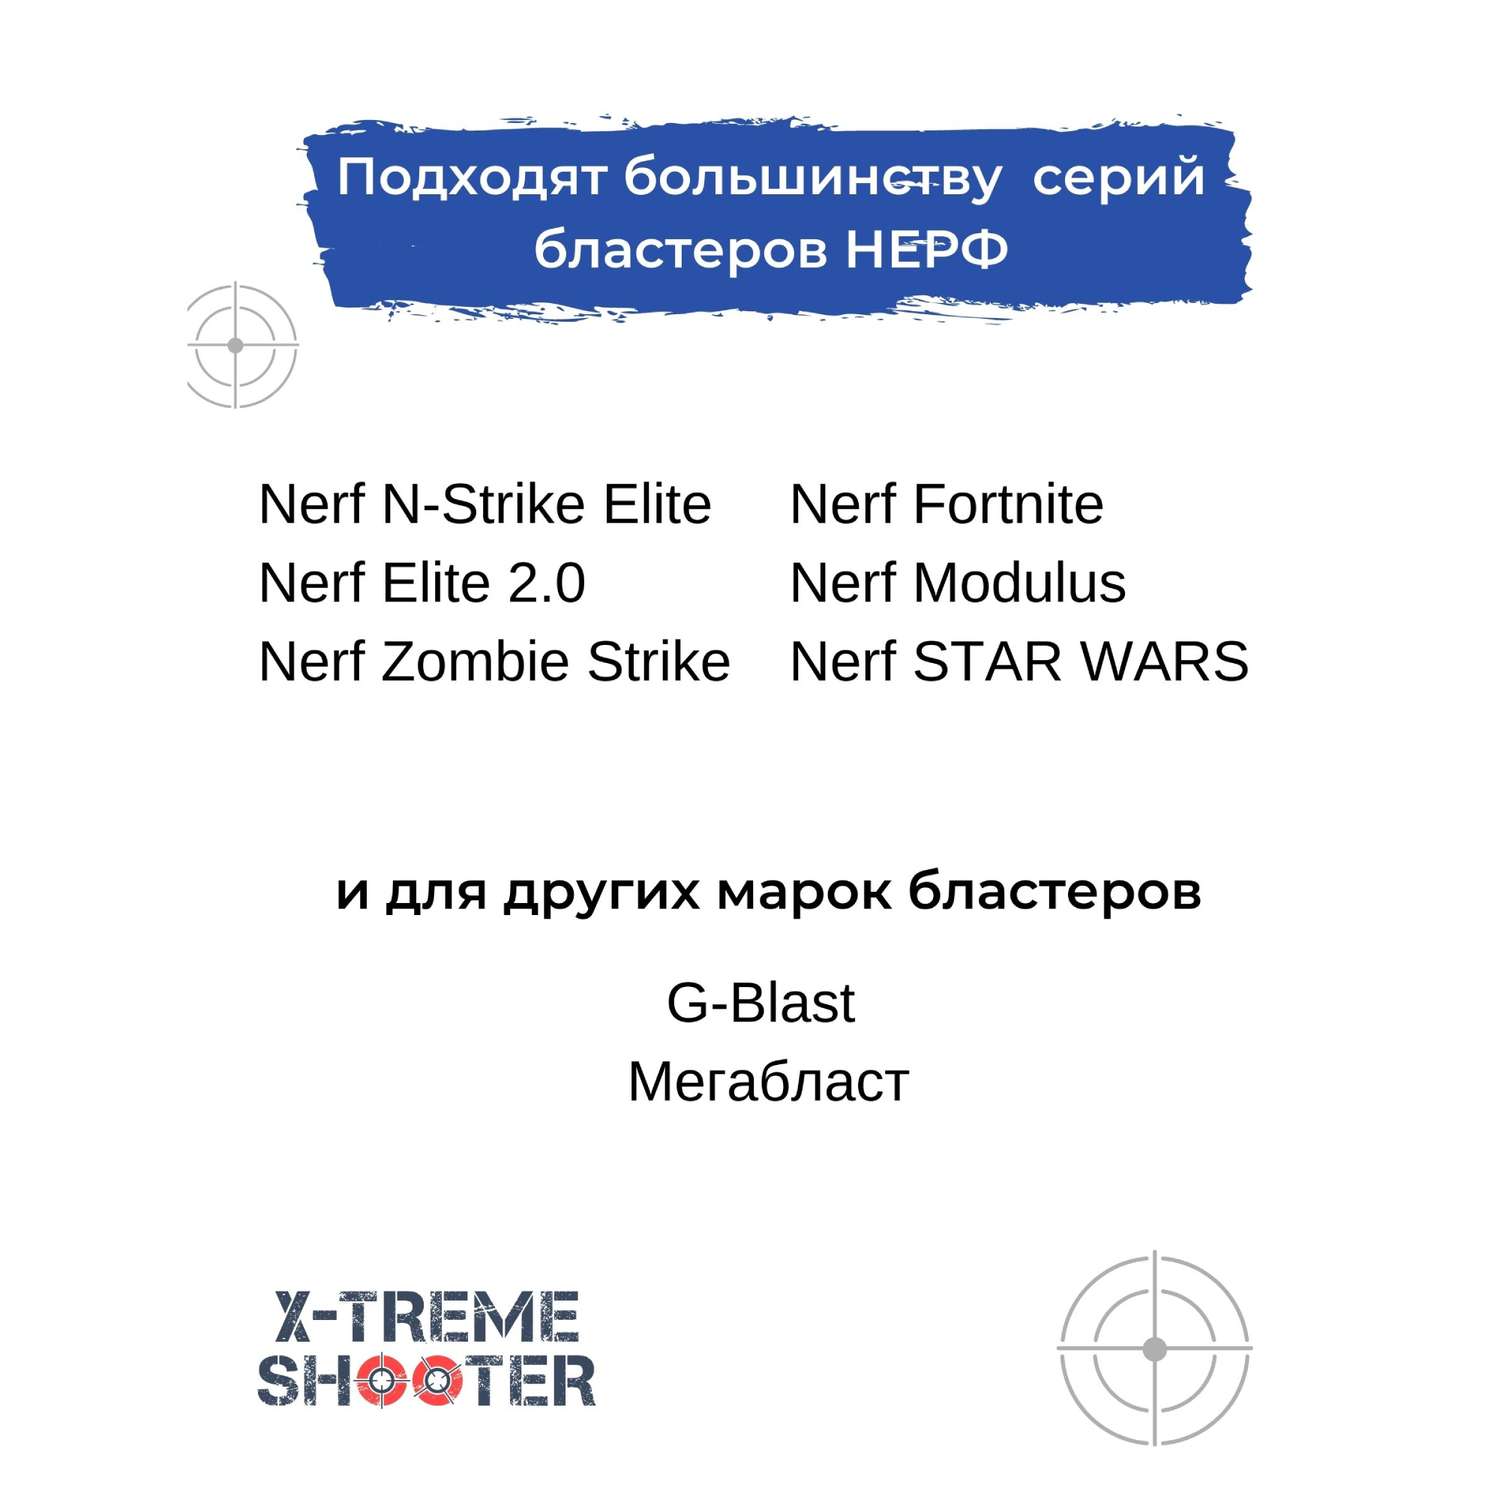 Набор игровой X-Treme Shooter браслет-патронташ и мягкие пули для бластера Нерф - фото 15